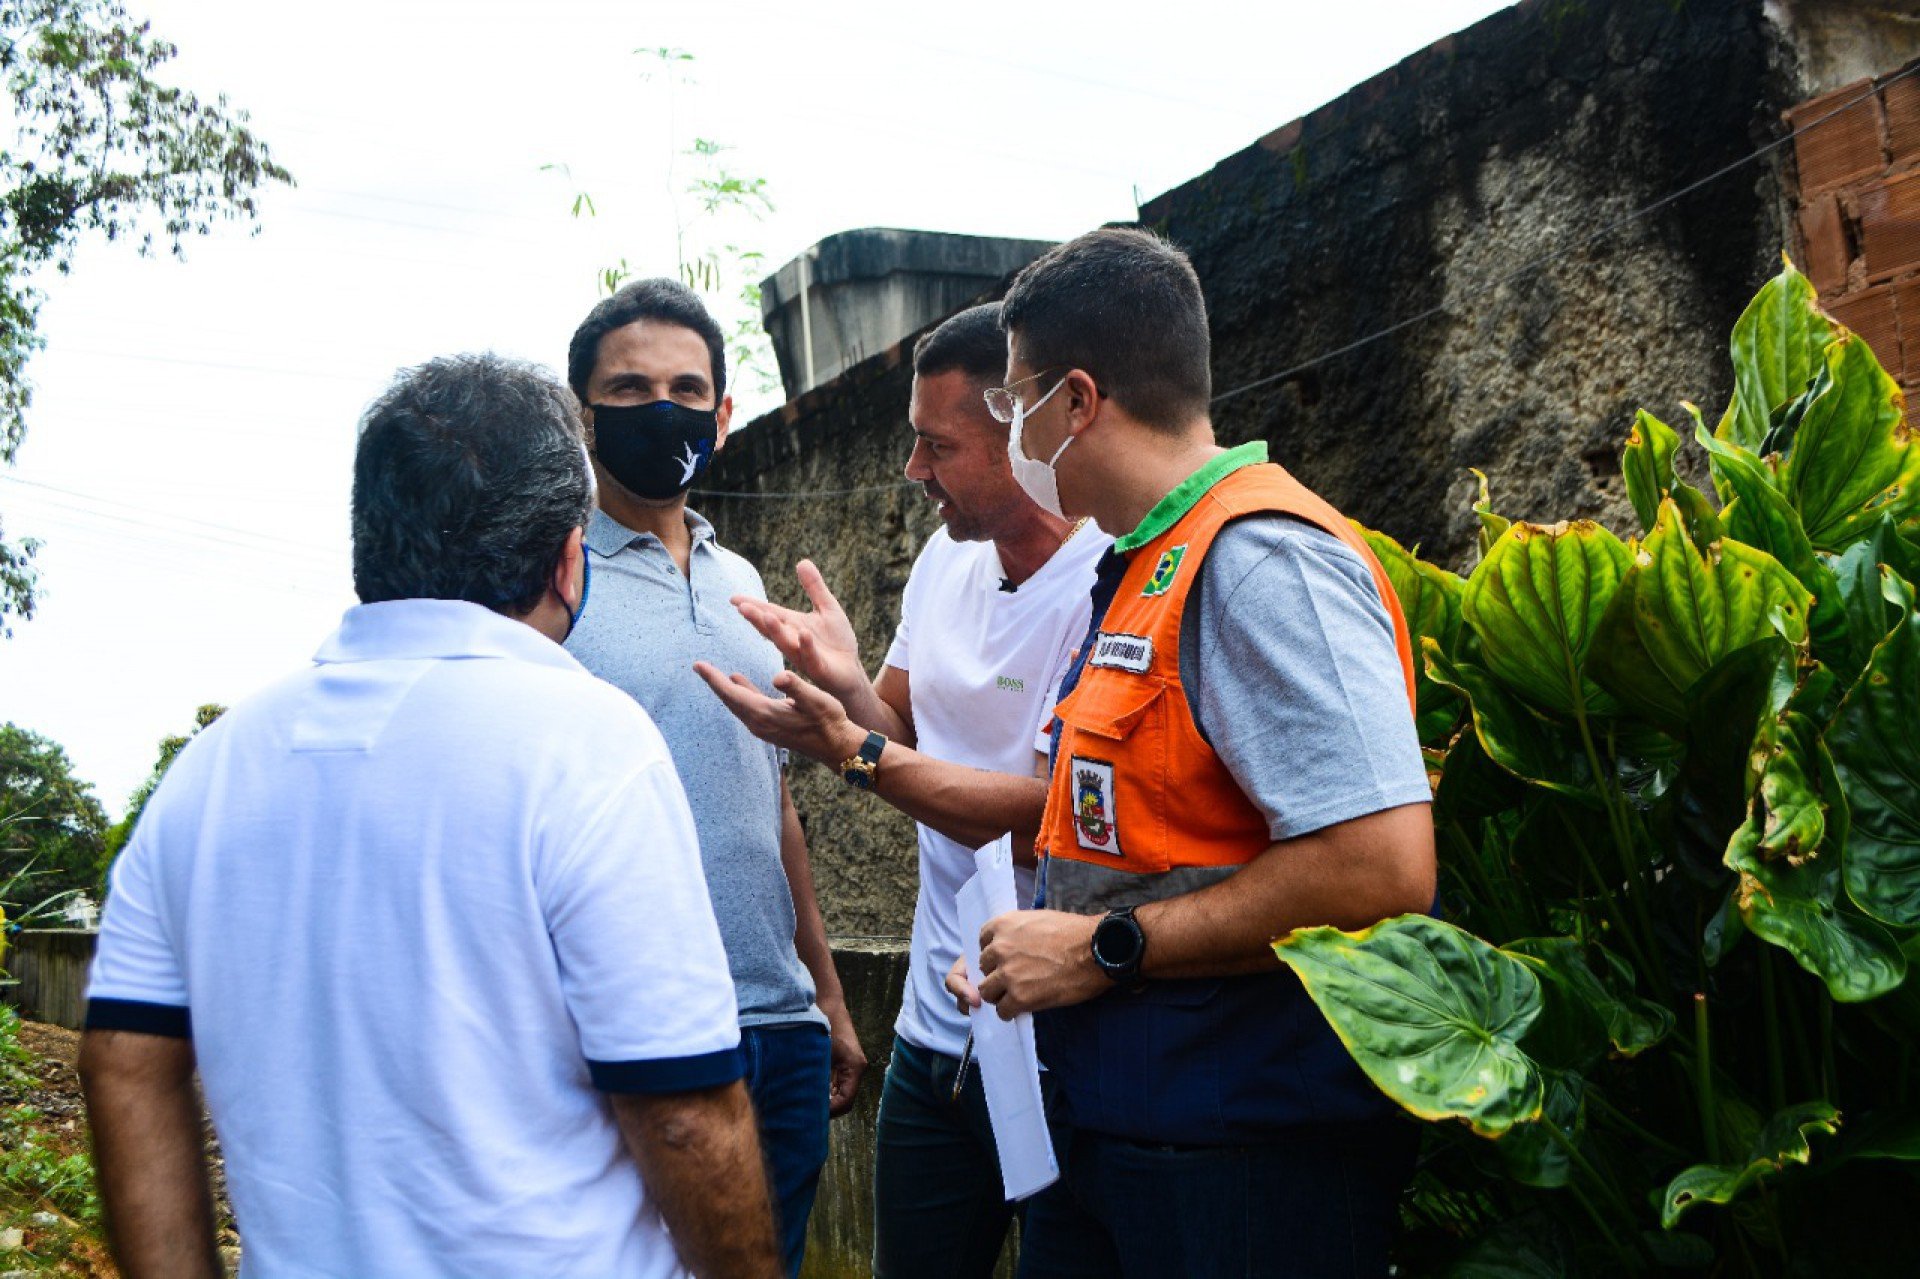 O prefeito Abraãozinho acompanhou os trabalhos, ao lado de autoridades municipais, e conversou com alguns moradores - Divulgação / PMN